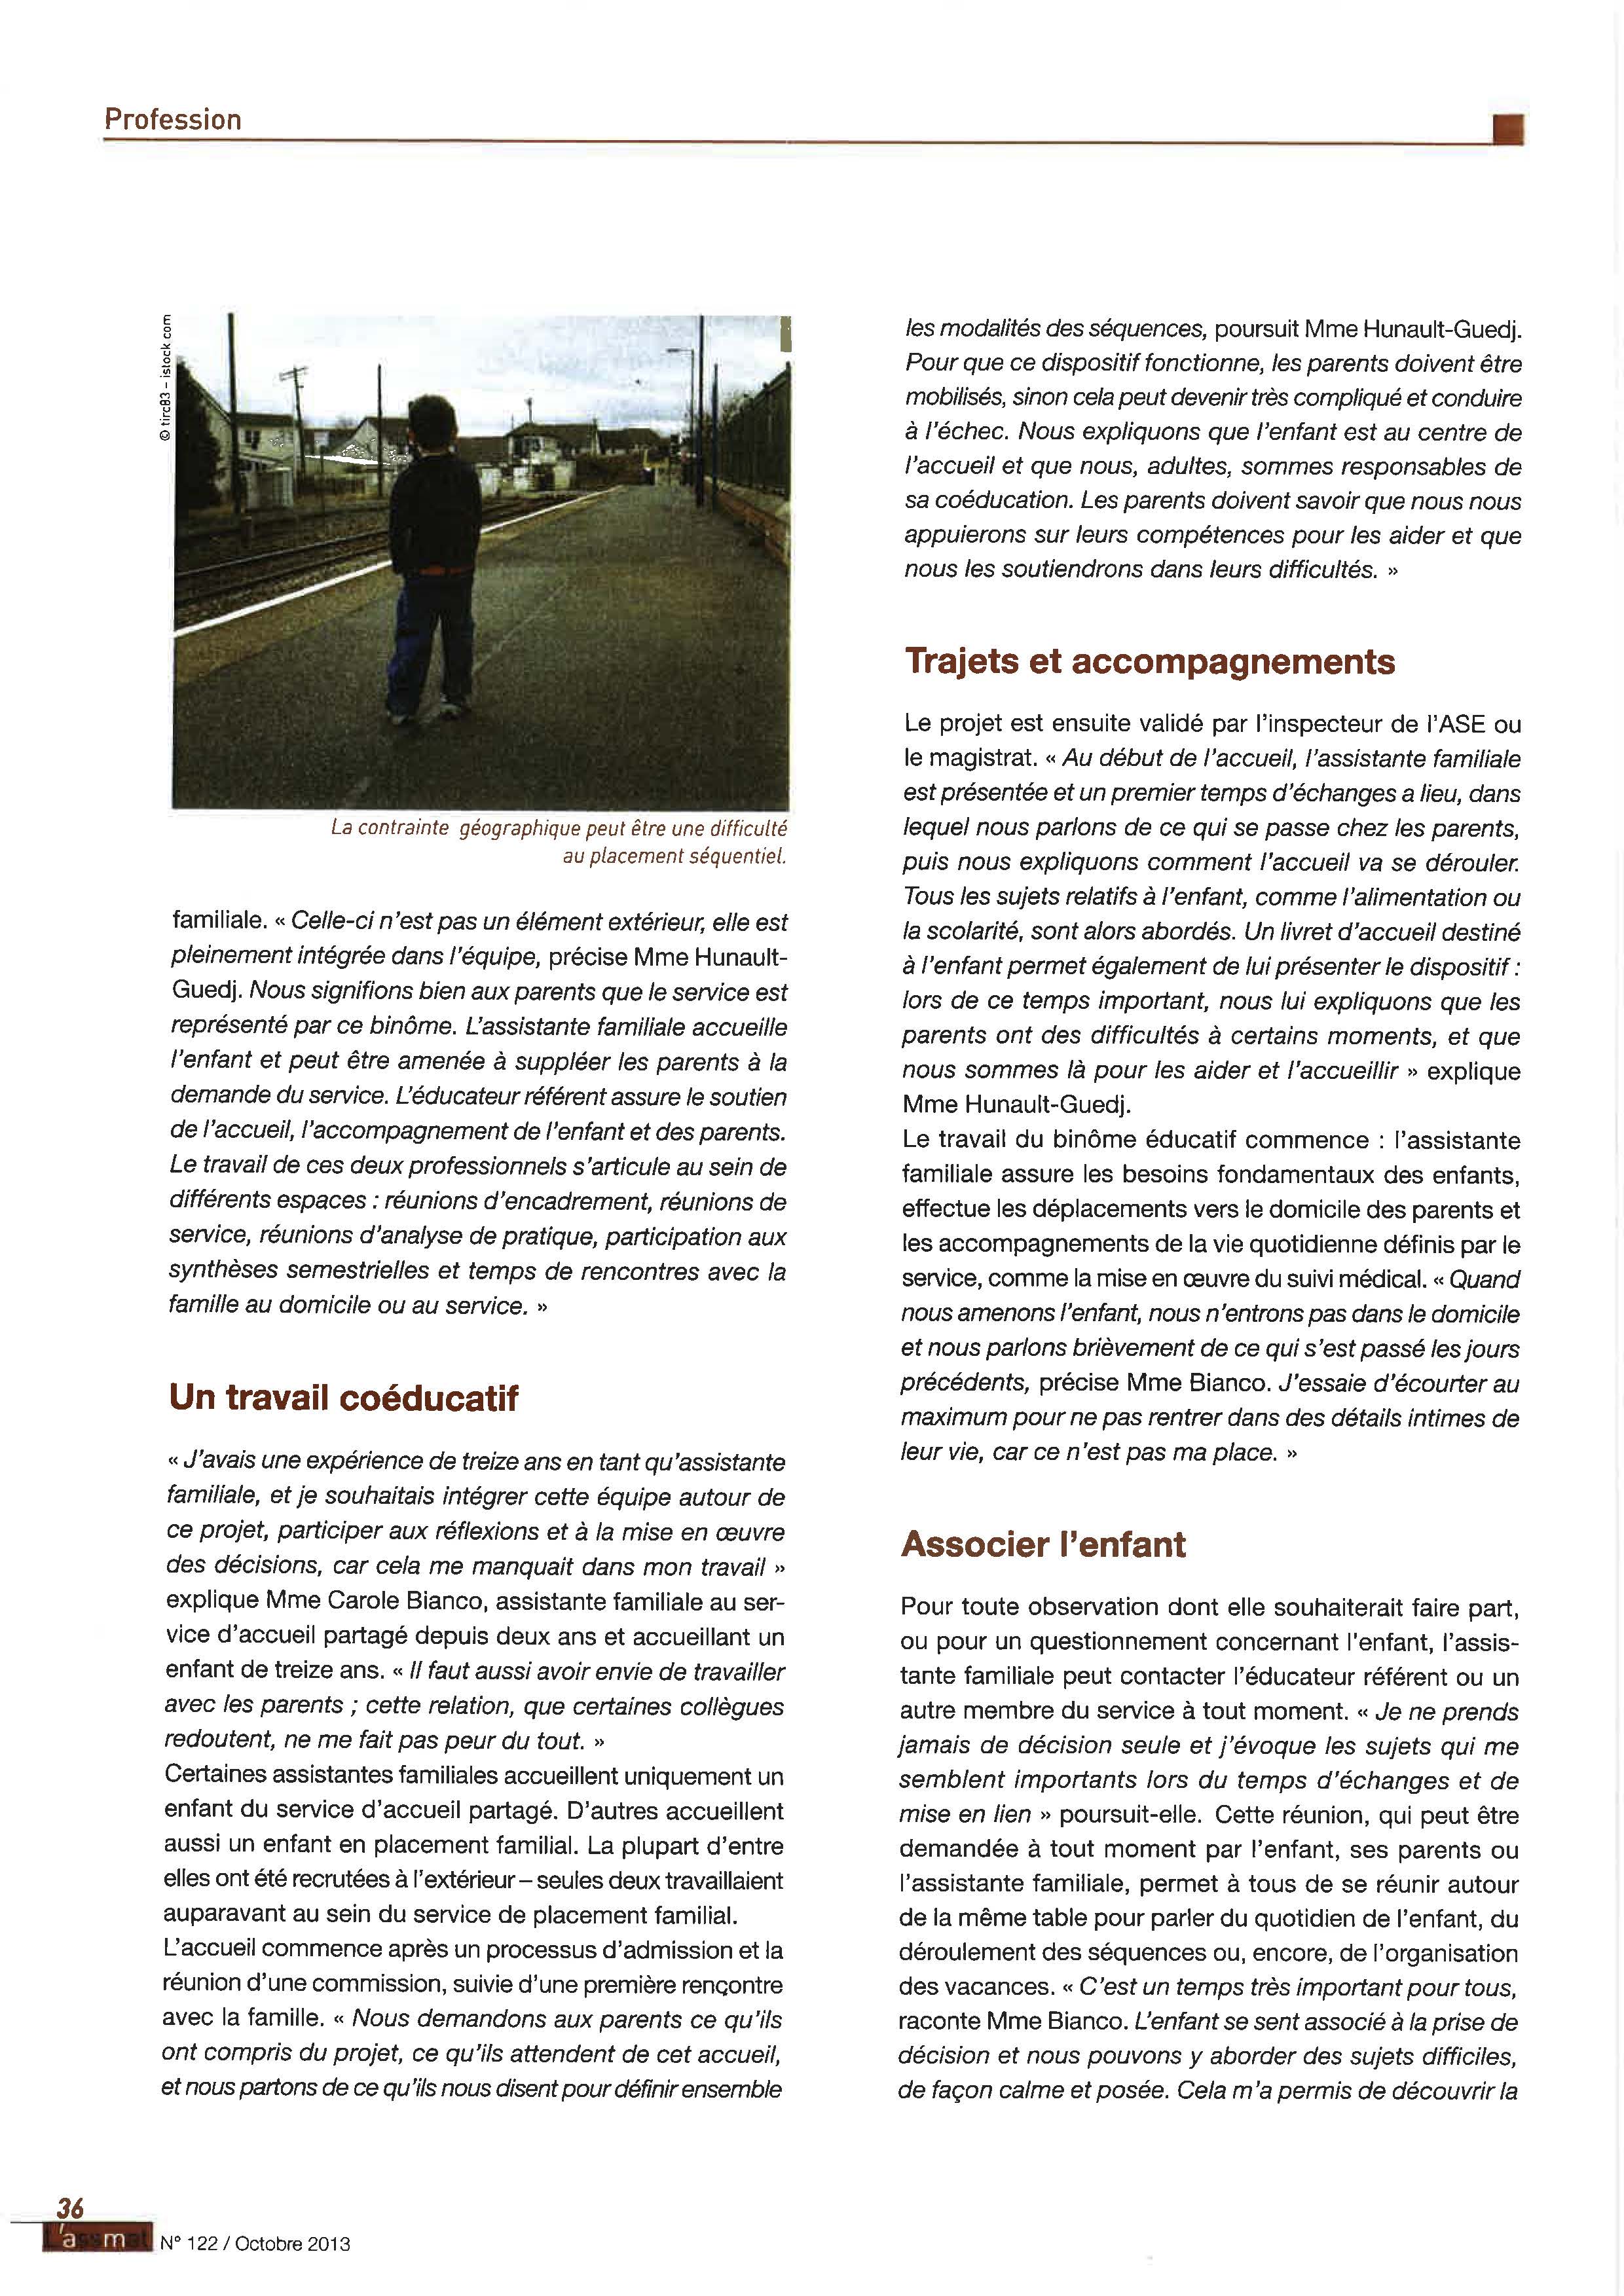 38 - Accueil séquentiel Page 2 - magazine ASSMAT - Oct 2013